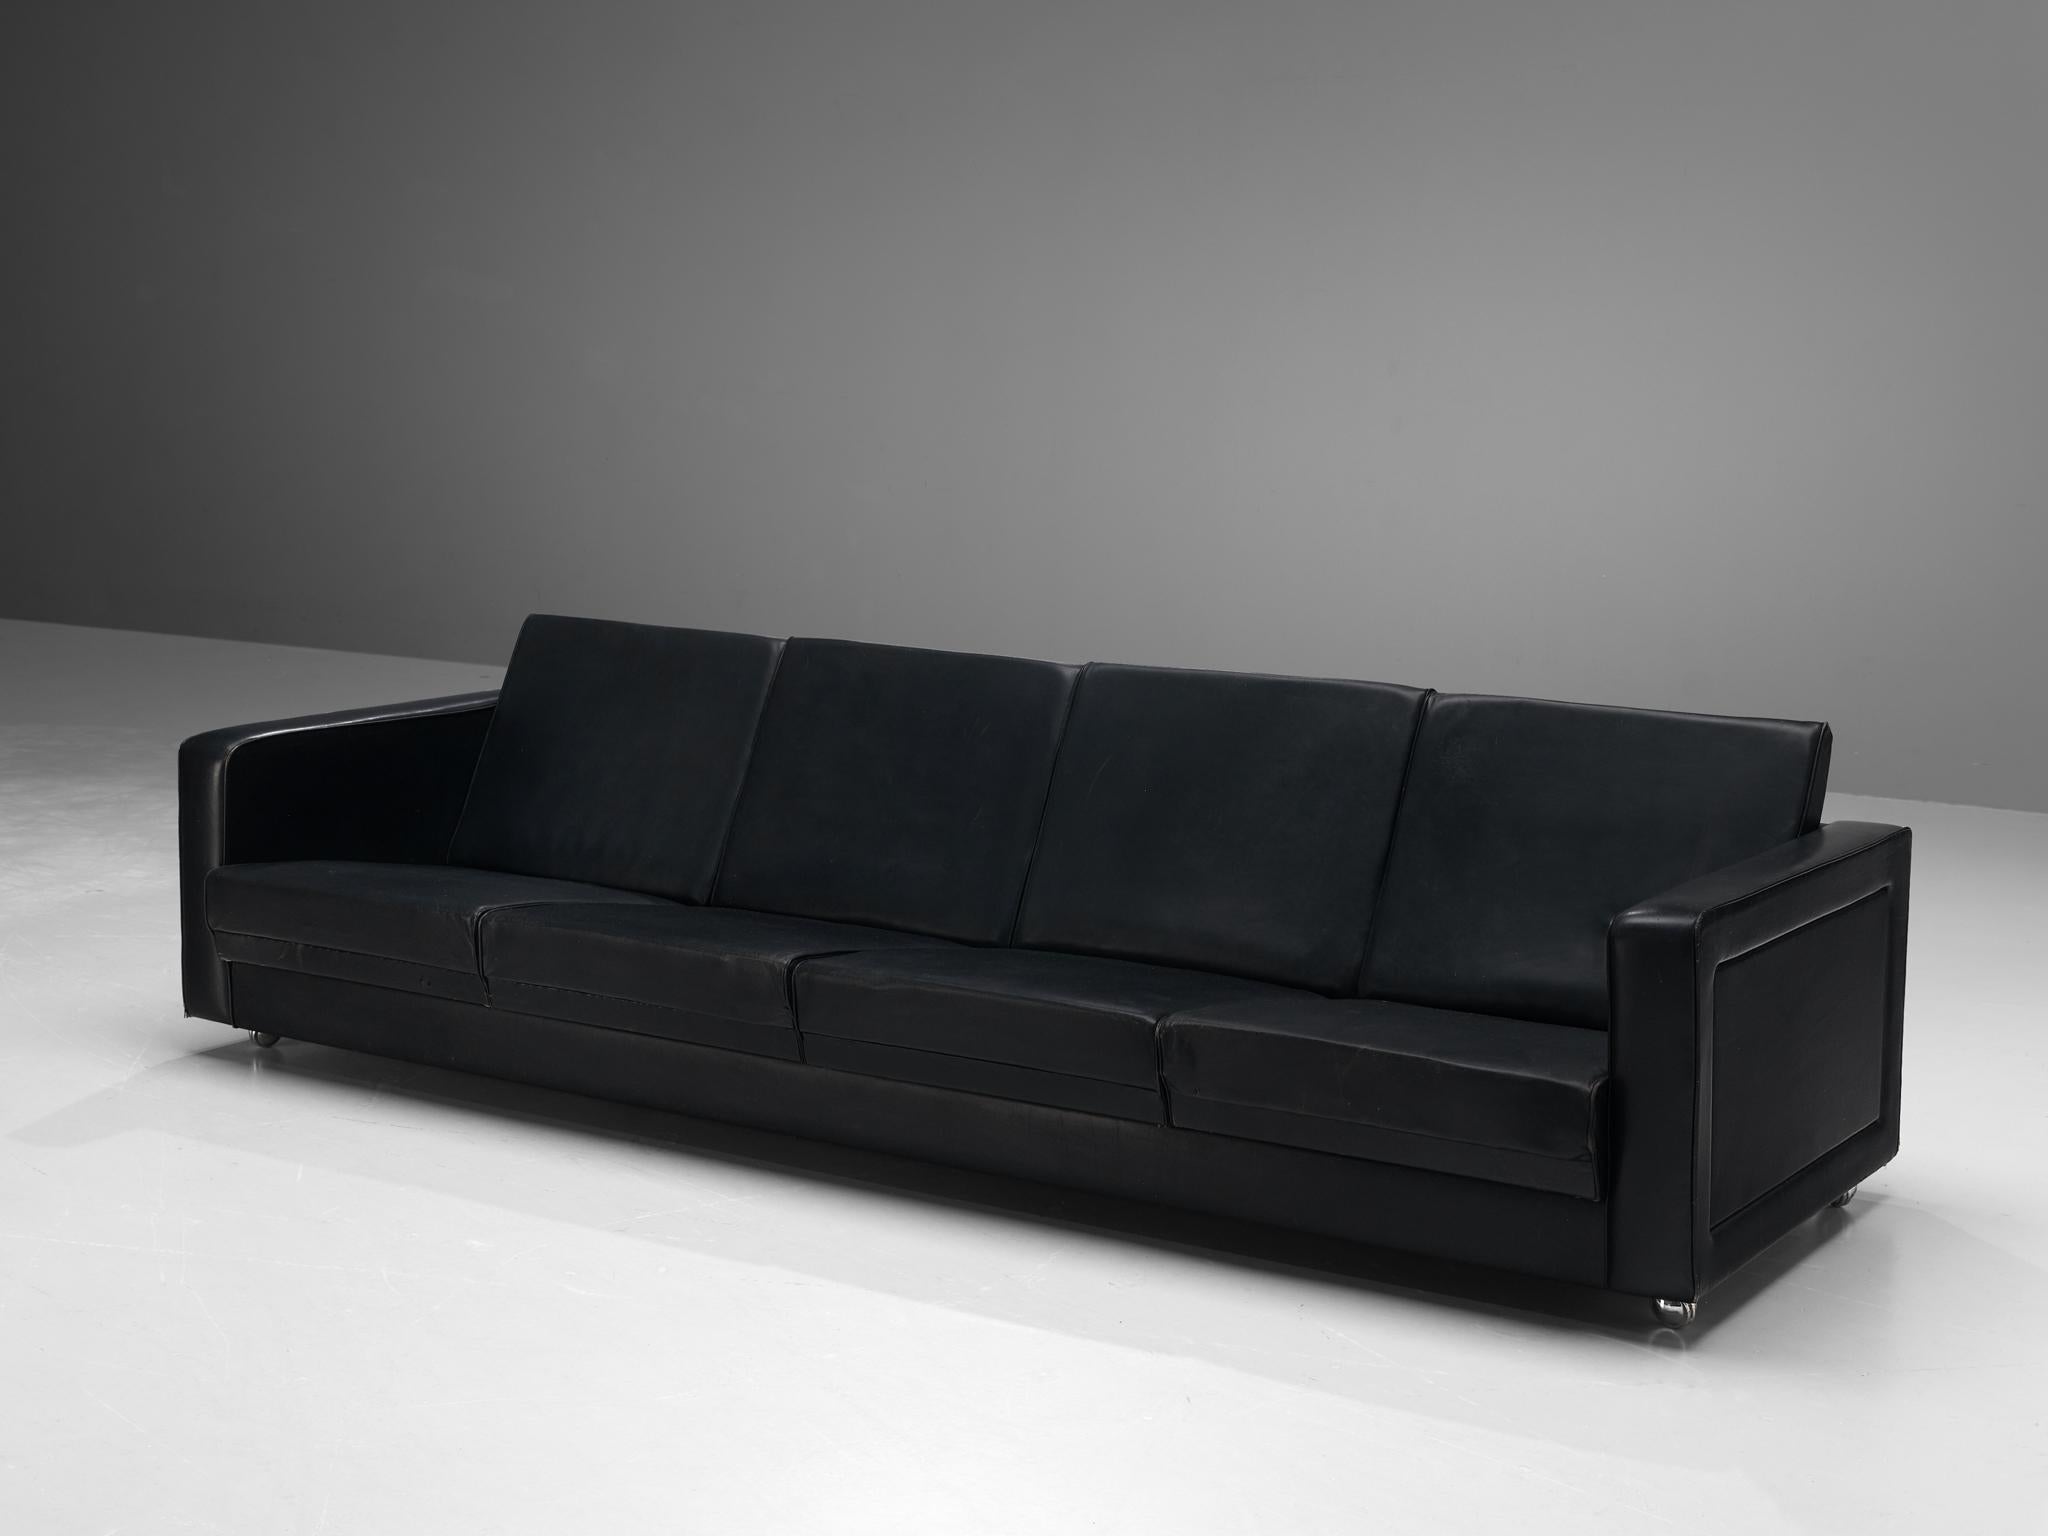 Canapé, similicuir, métal, Danemark, années 1960.

Ce canapé quatre places est simpliste, mais son design est élégant. Grâce à la couleur noire générale du similicuir, le canapé rayonne de douceur et souligne le design épuré. Il met donc en valeur